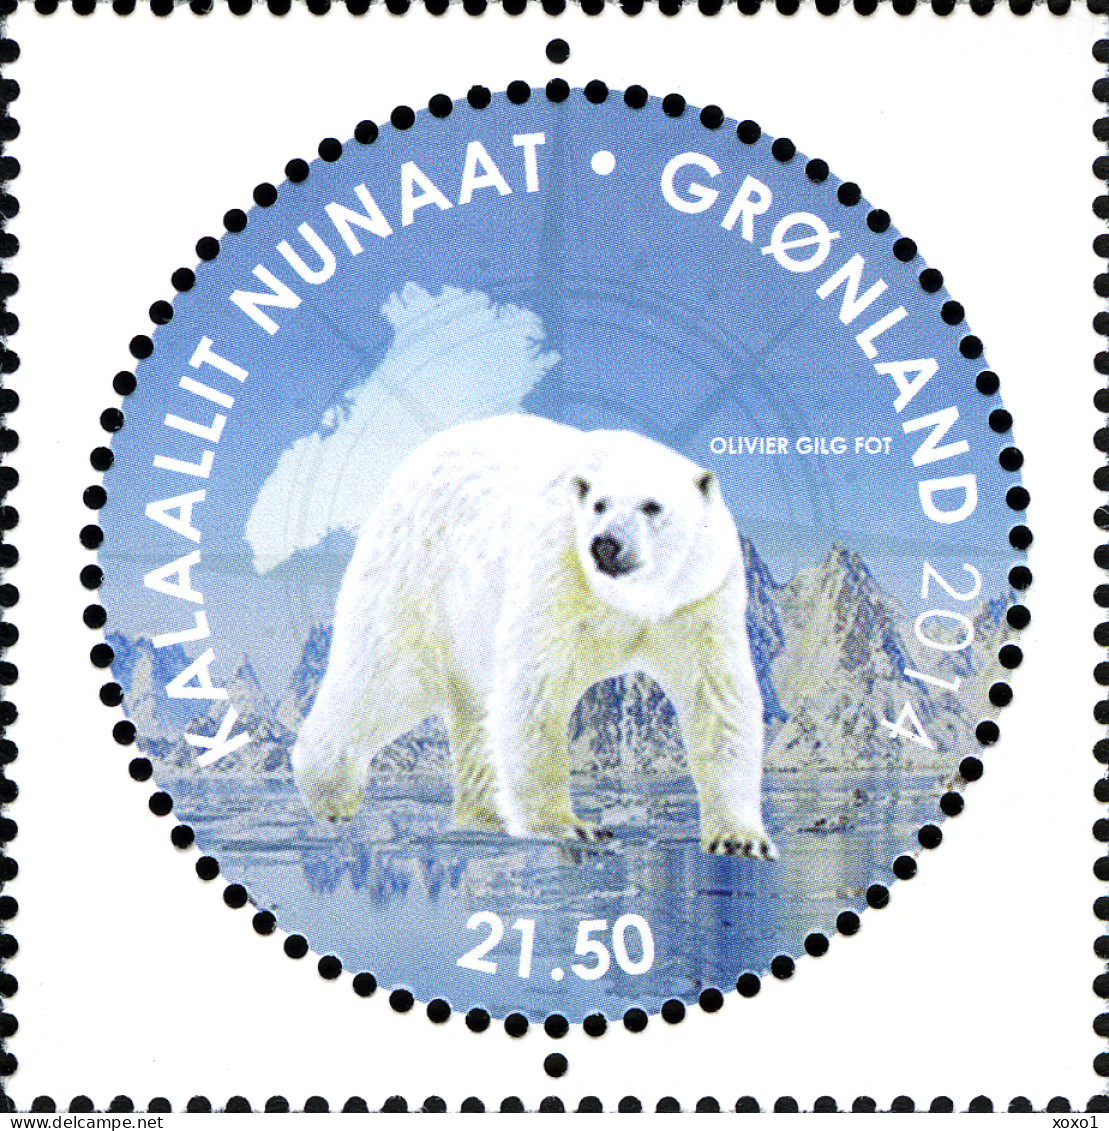 Greenland 2014 MiNr. 680 (Block 70) Dänemark Grönland Ross Antarctica Pole Bears BIRDS Penguins 1v + S\sh MNH** 13.00 € - Arctic Tierwelt